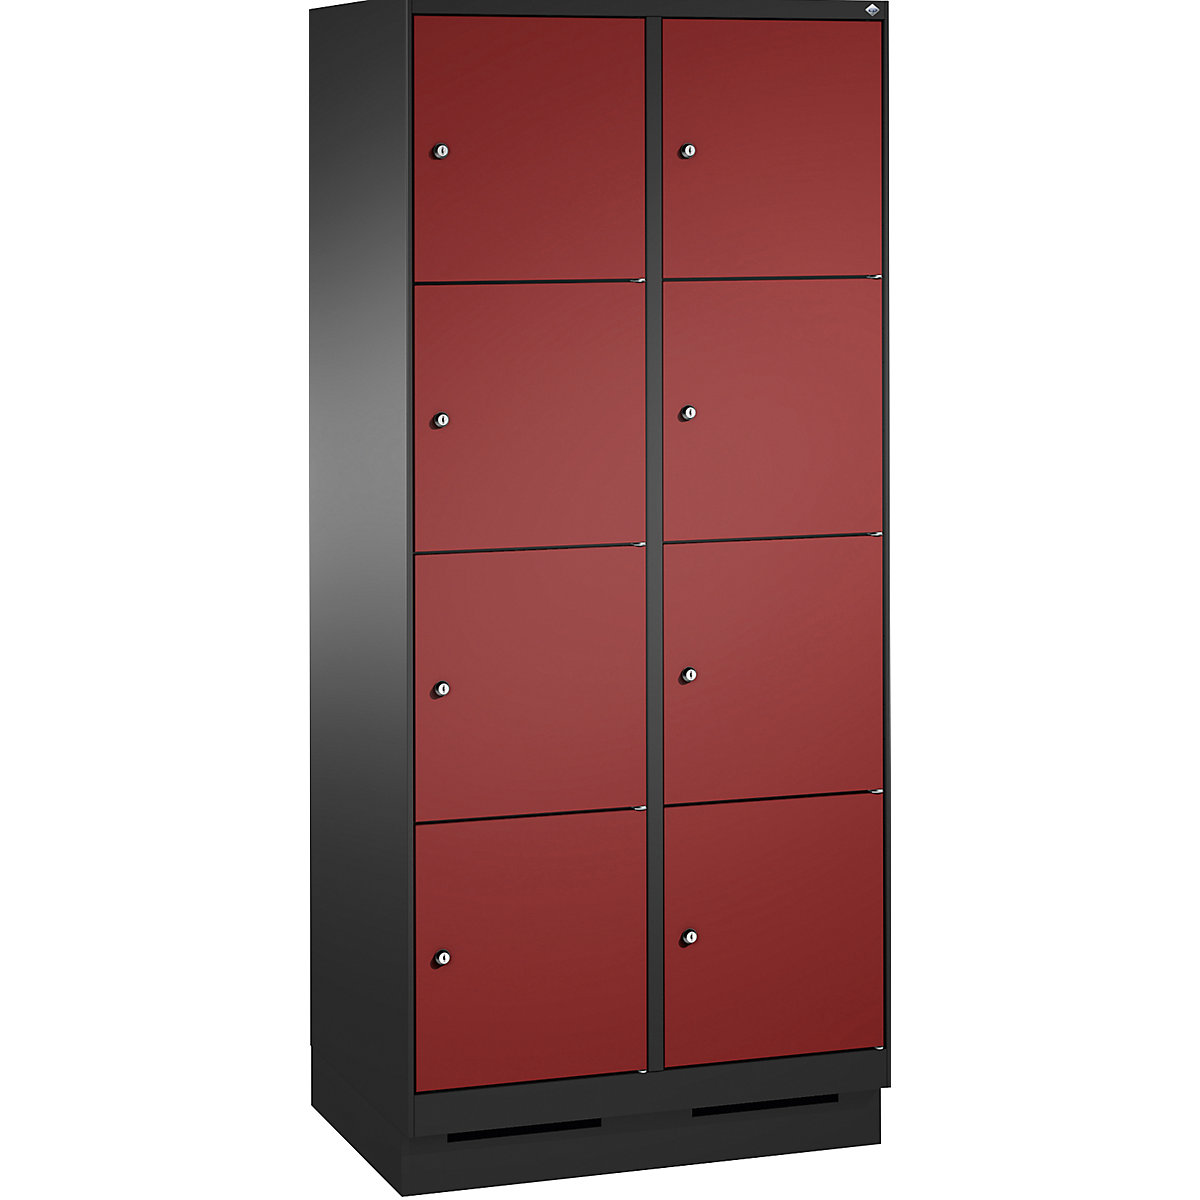 Armoire à casiers sur socle EVOLO – C+P, 2 compartiments, 4 casiers chacun, largeur compartiments 400 mm, gris noir / rouge rubis-12